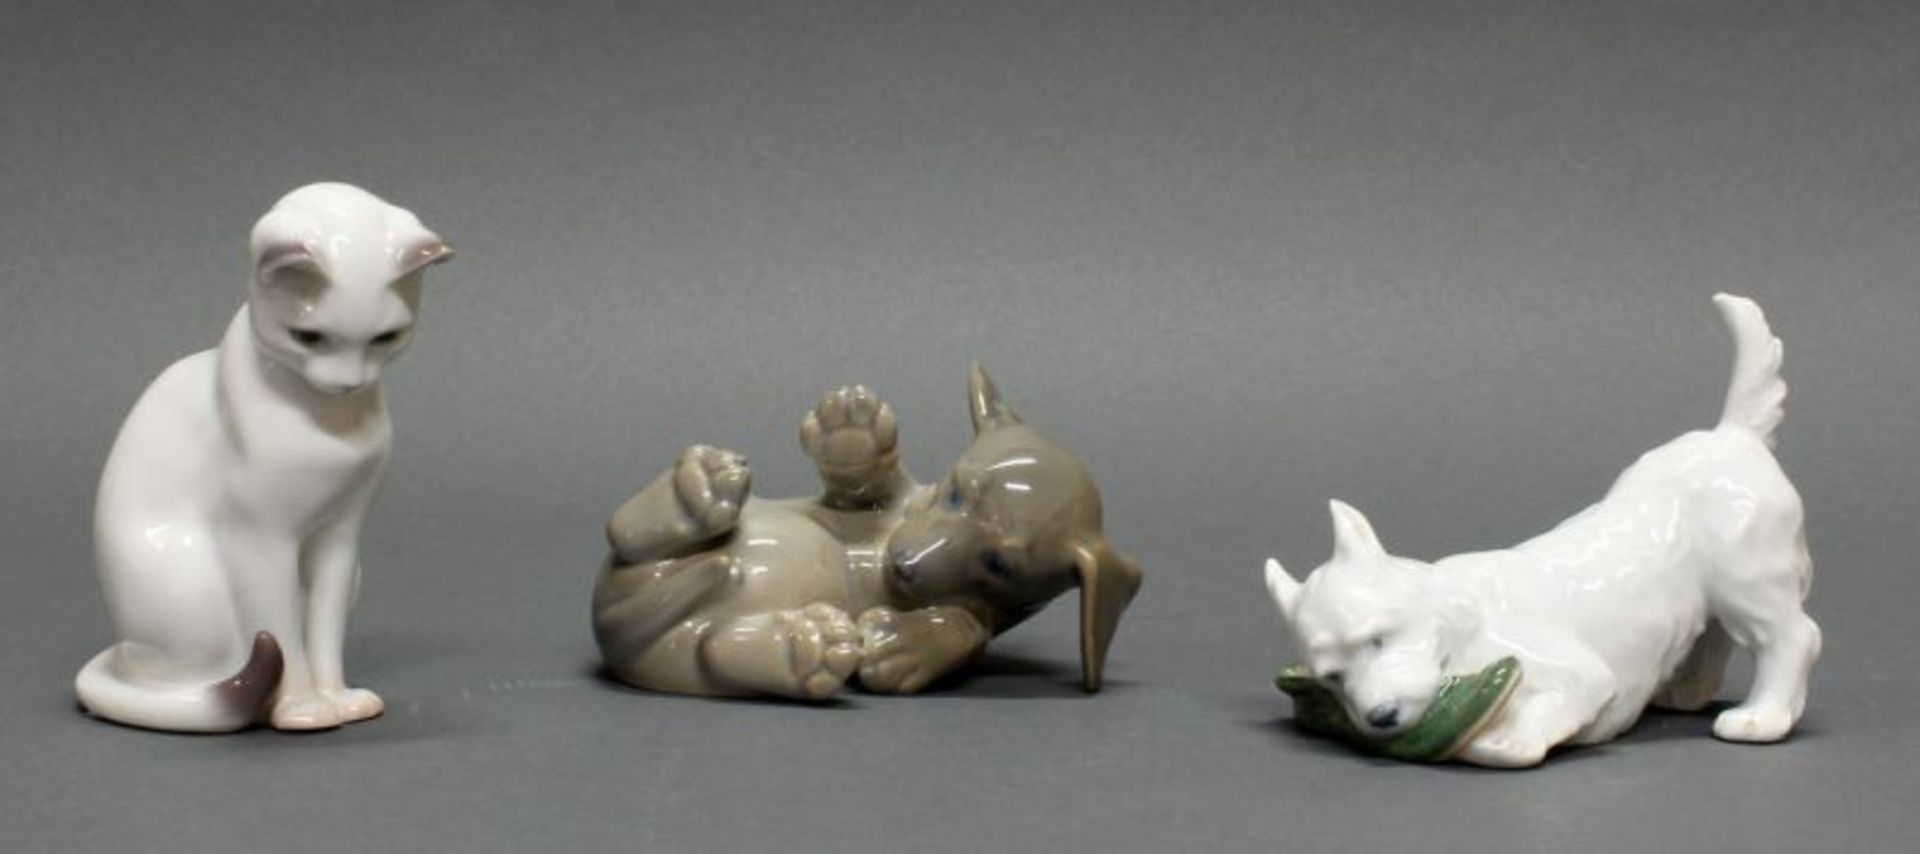 2 Porzellanfiguren, "Dachshund", "Terrier mit Schuh", Royal Kopenhagen, Modellnummern 1408 bzw 3476,